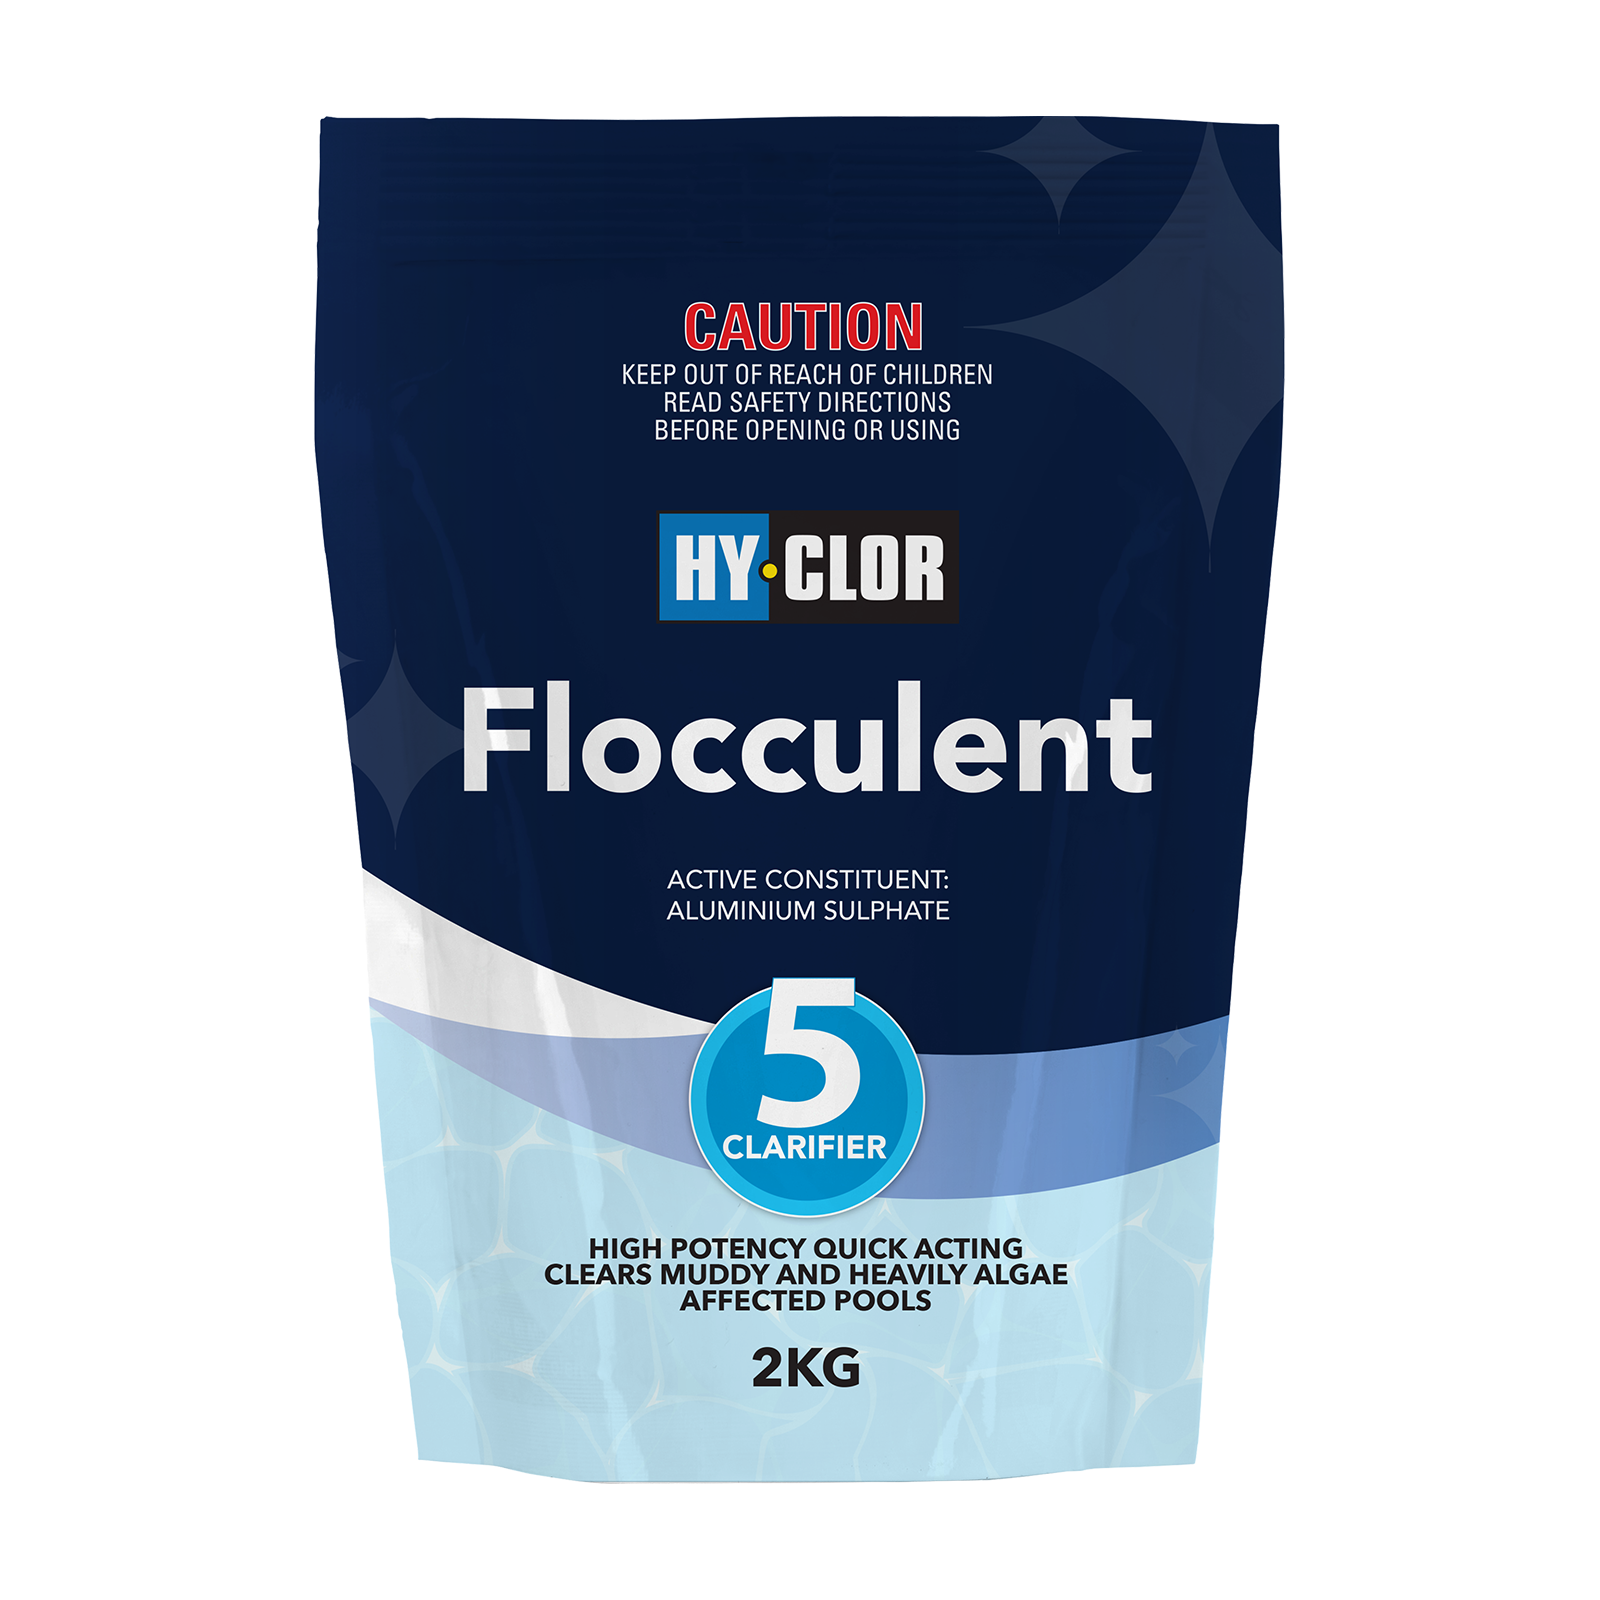 HY-CLOR FLOCCULENT